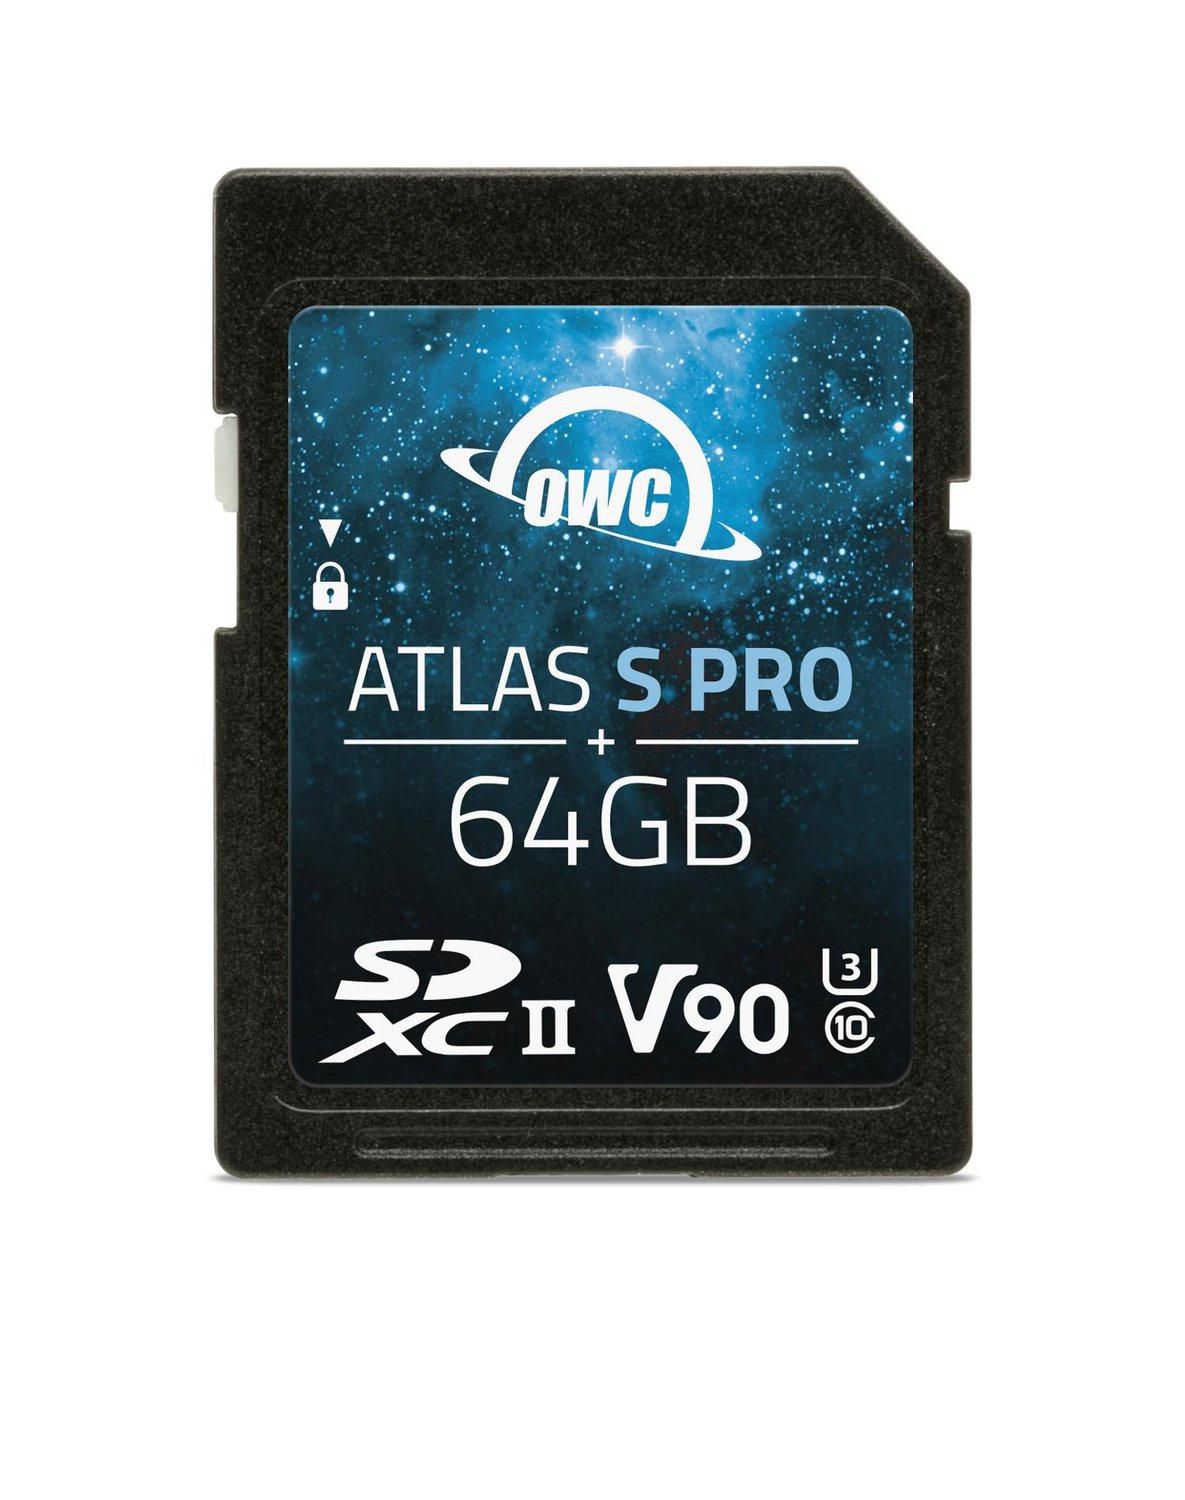 OWCSDV90P0064 W127153717 64GB Atlas S Pro SDXC UHS-II 